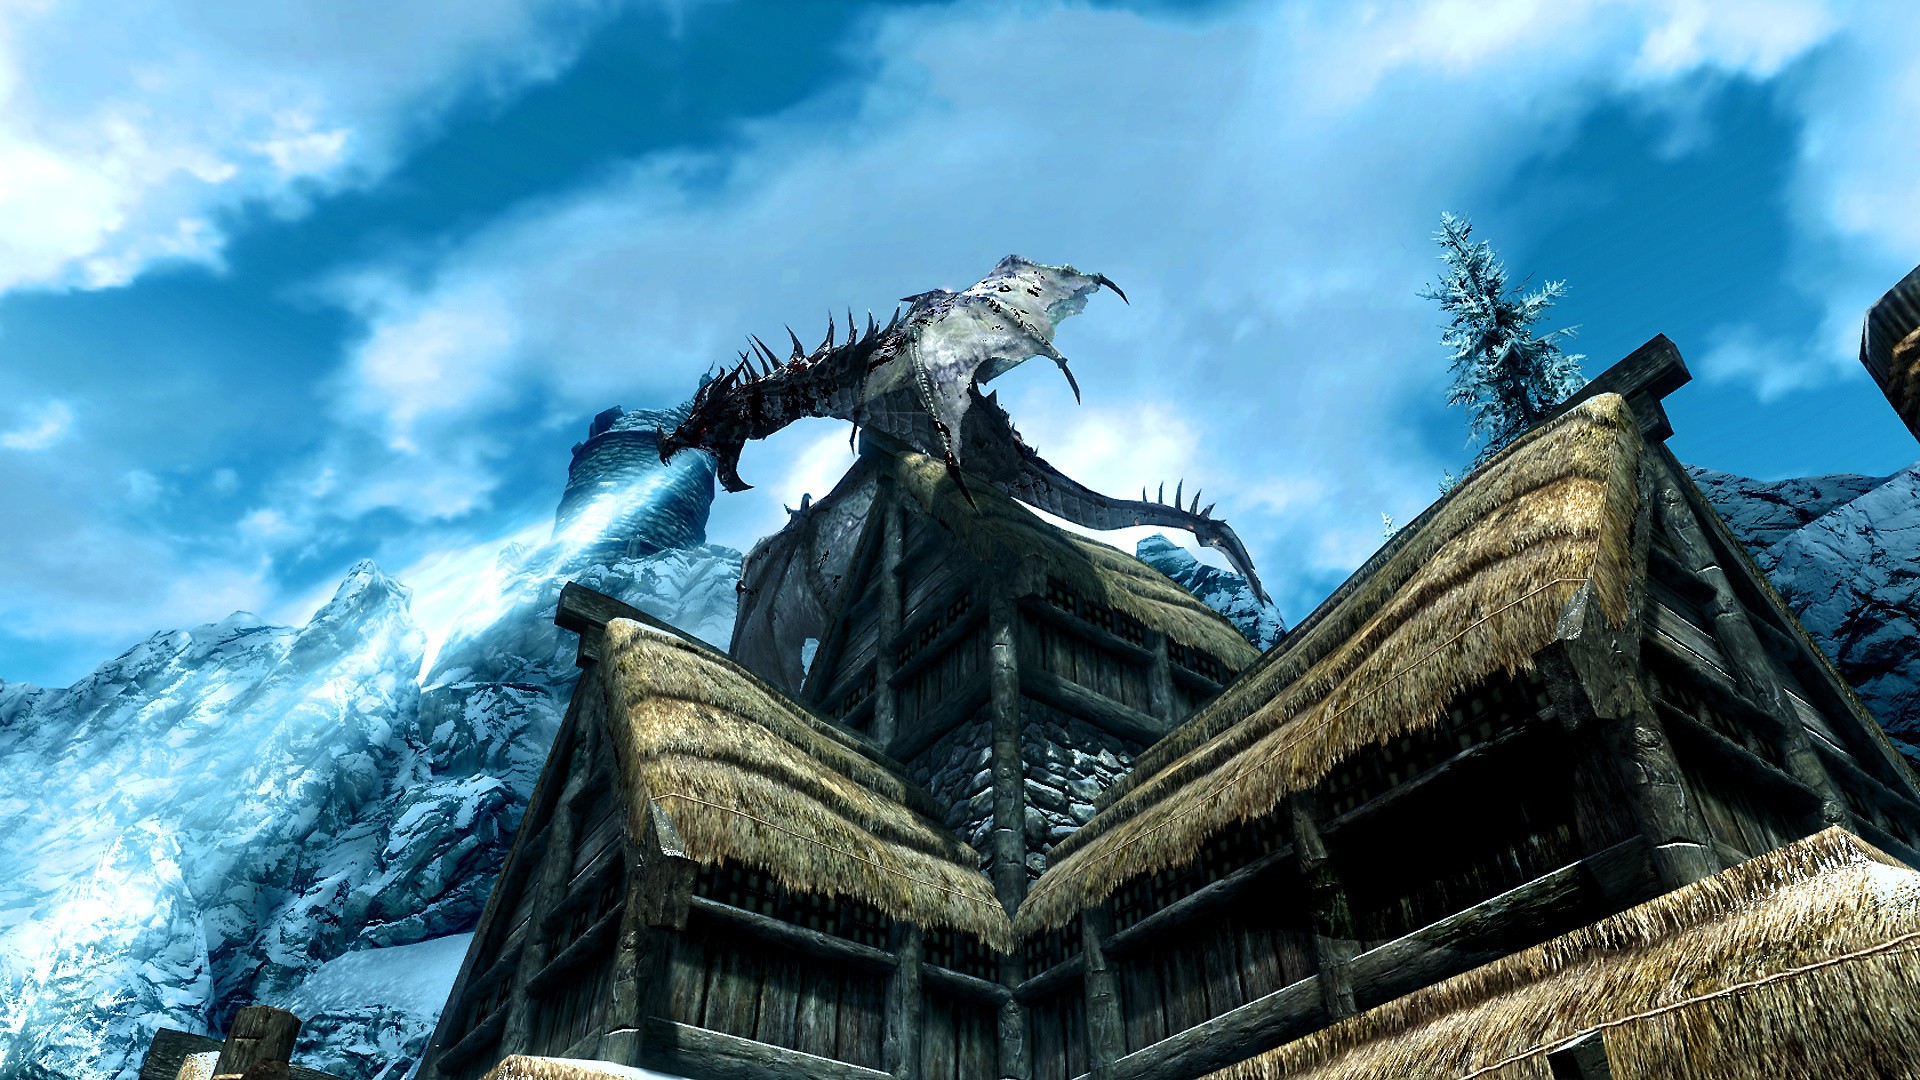 Free download wallpaper The Elder Scrolls V: Skyrim, The Elder Scrolls, Video Game on your PC desktop